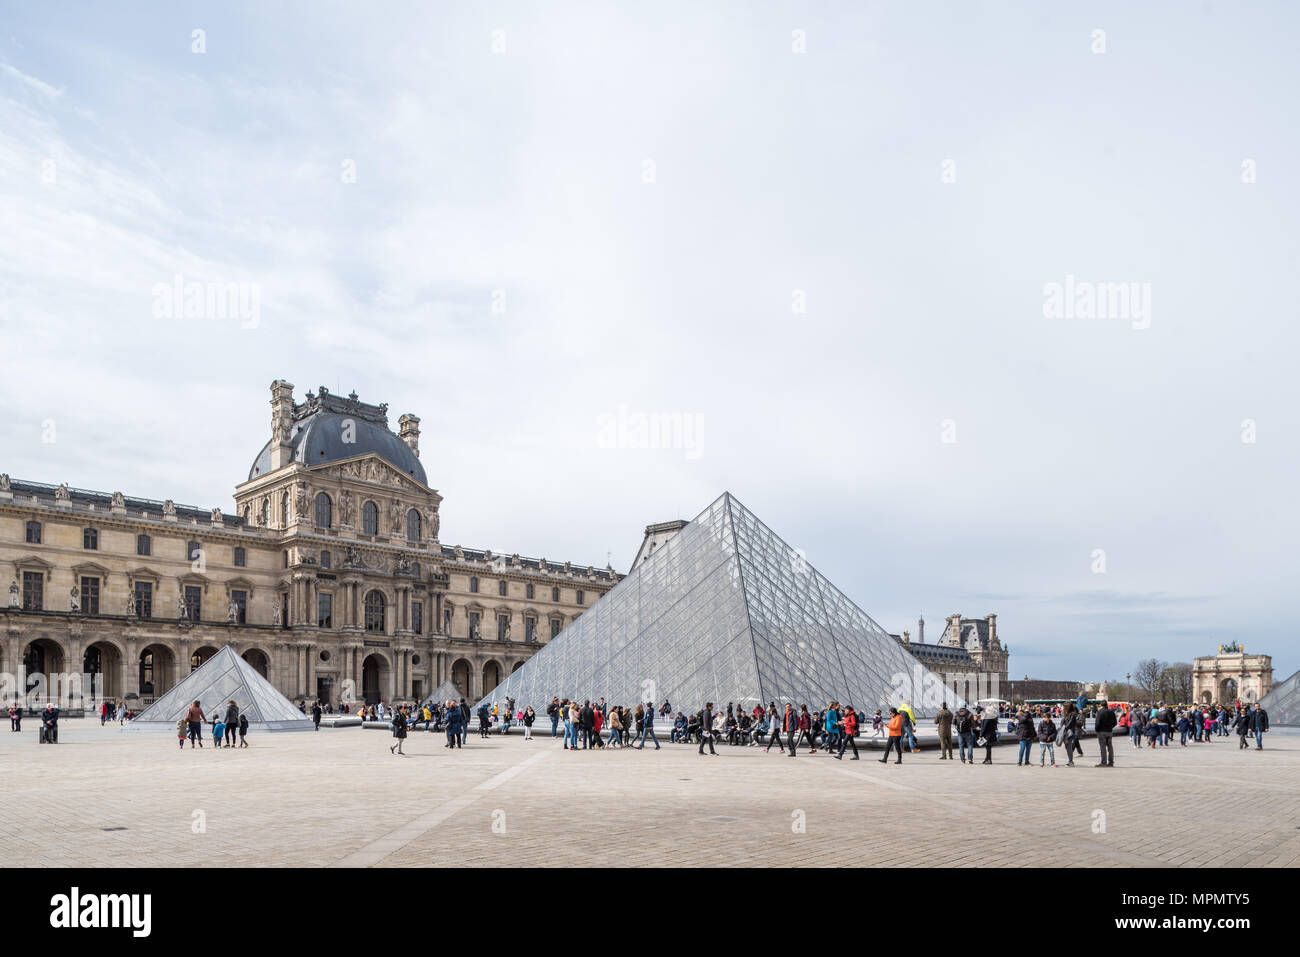 France, Paris - 2 Avril 2018 : Pyramide du Louvre conçu par I.M. Pei Banque D'Images